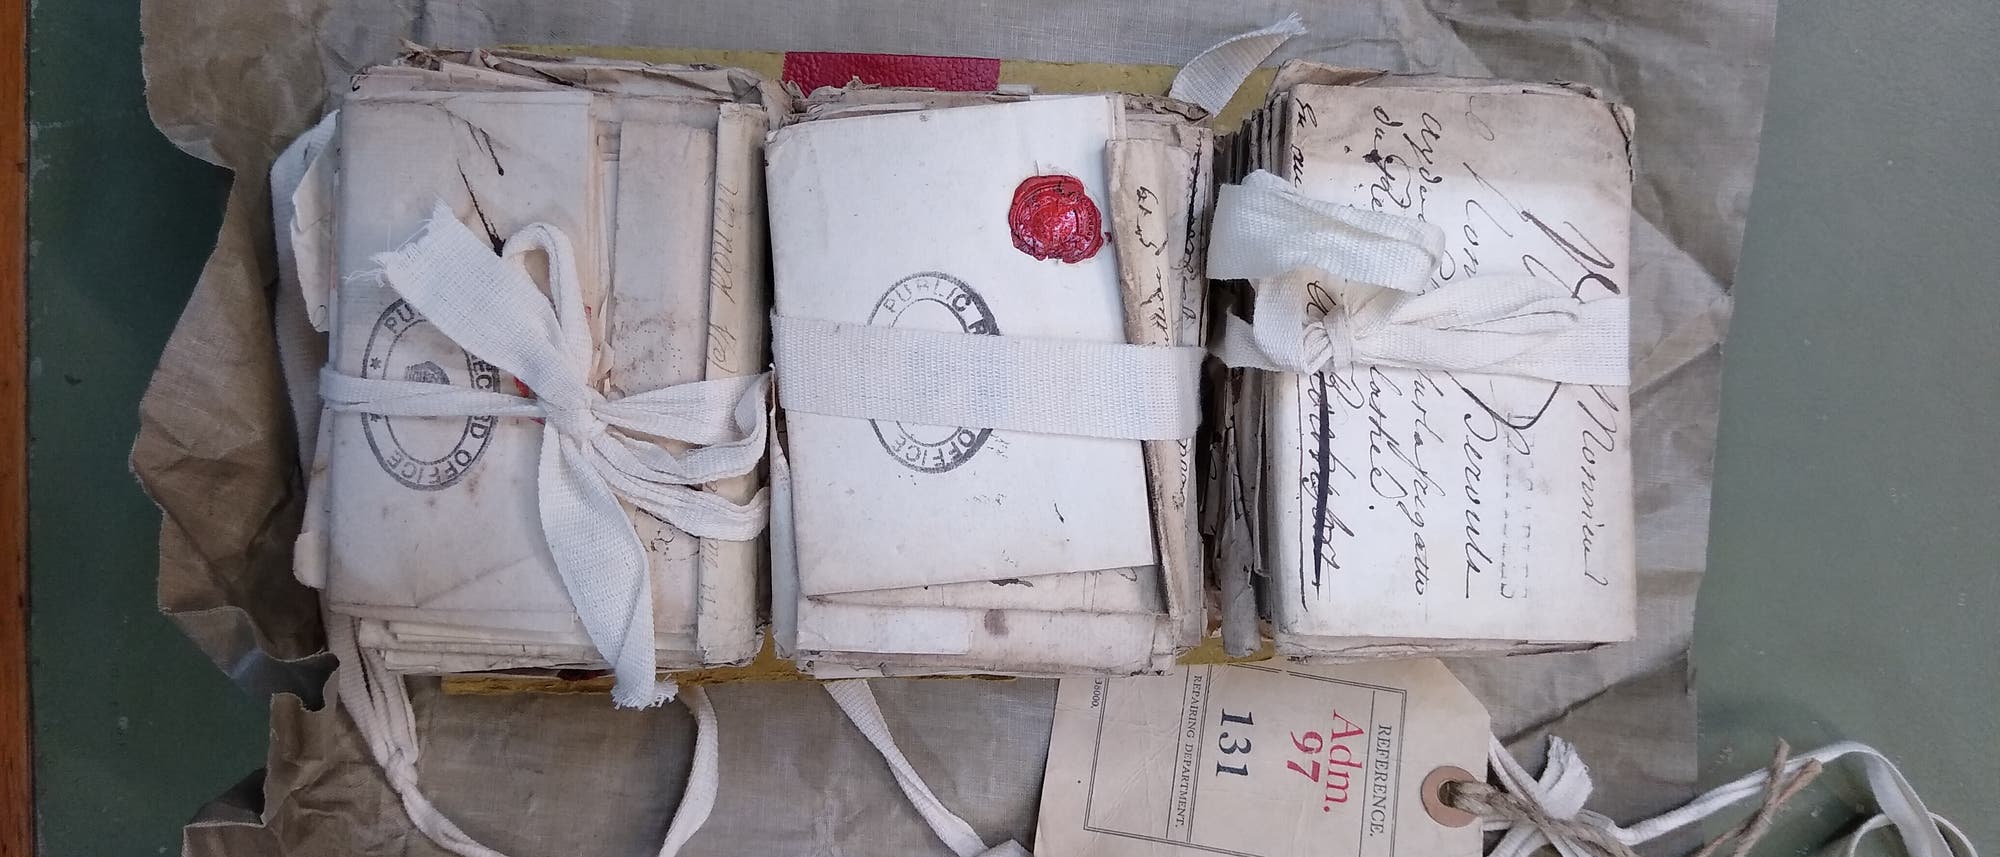 Restos de guerra: cartas de amor confiscadas leídas 265 años después